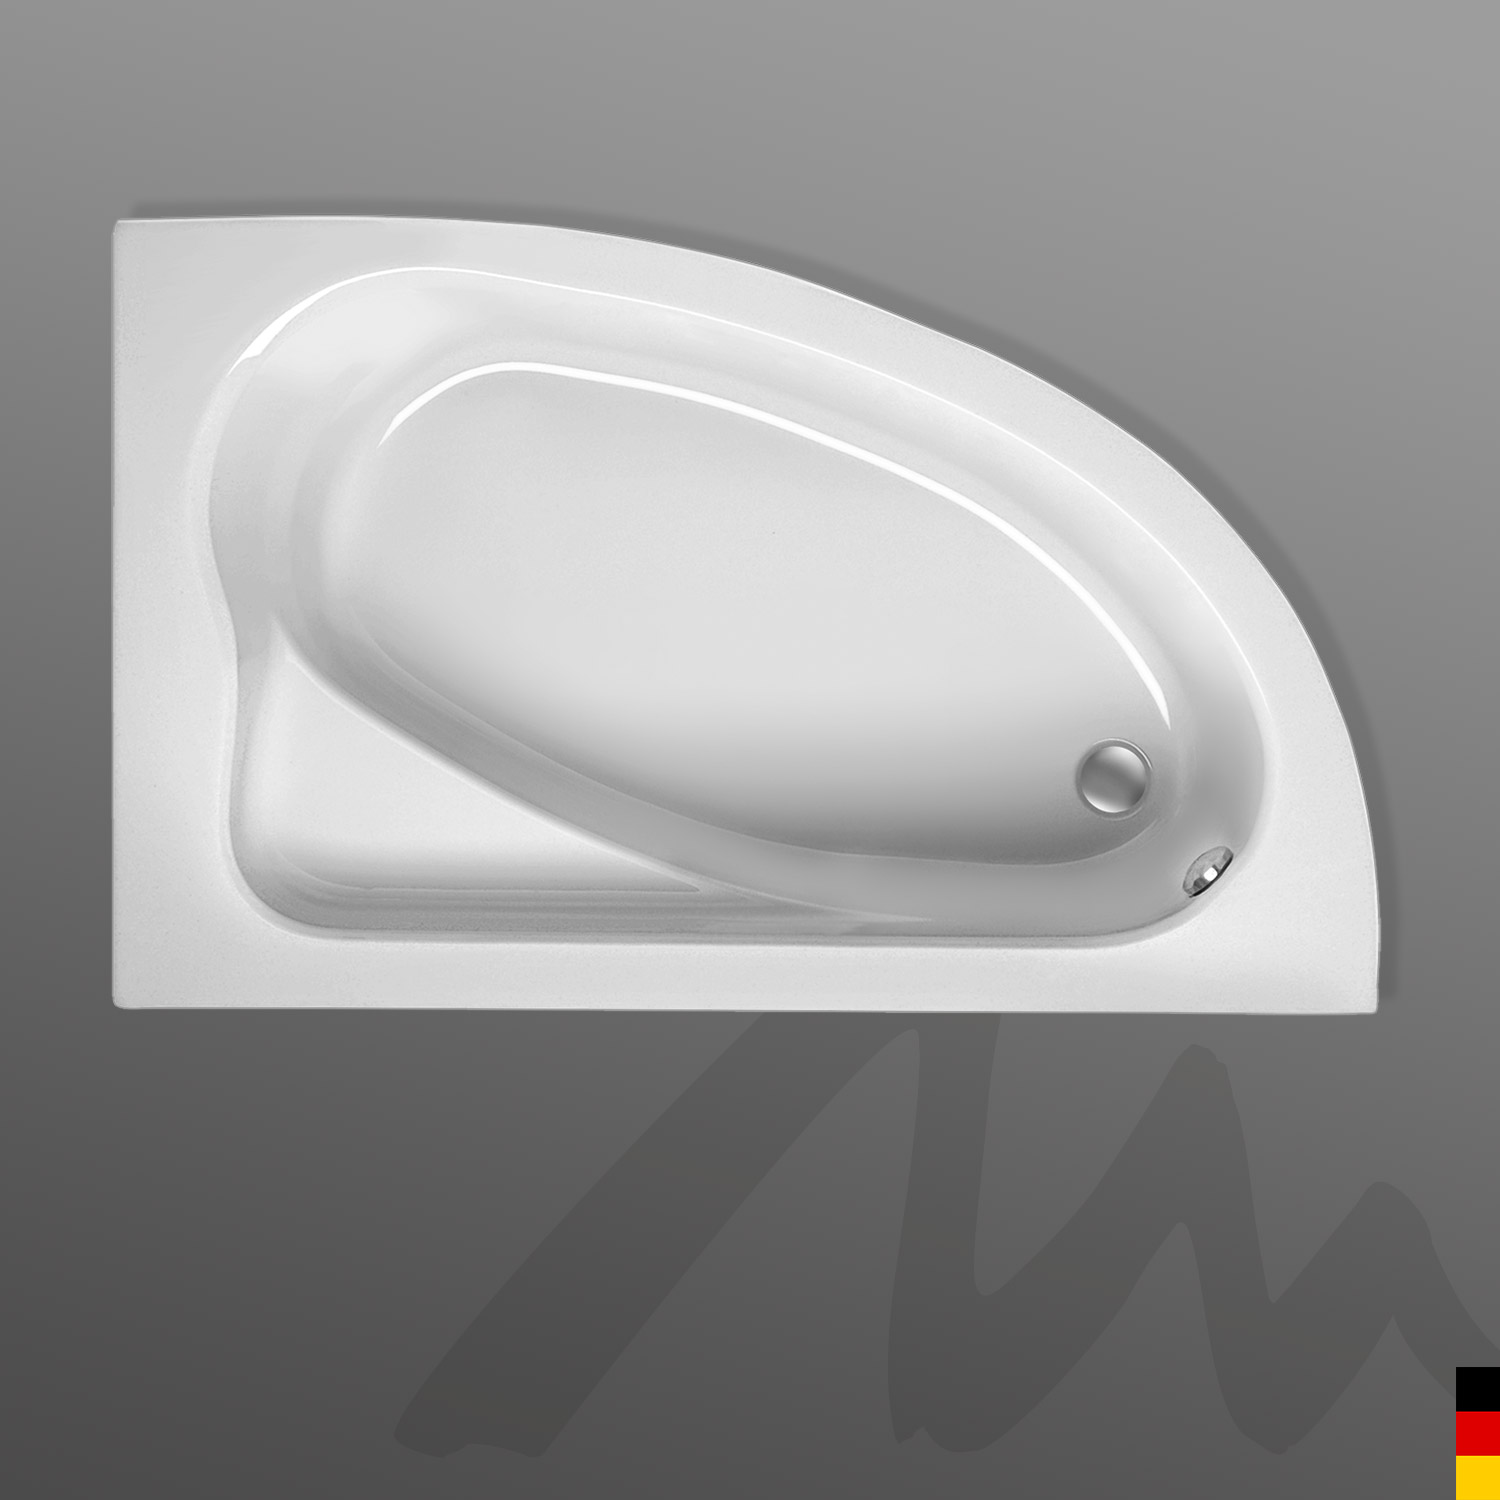 Mauersberger Badewanne Eckwanne Aspera 150/100 rechts mit Schürze/Panel 1-seitig - weiß